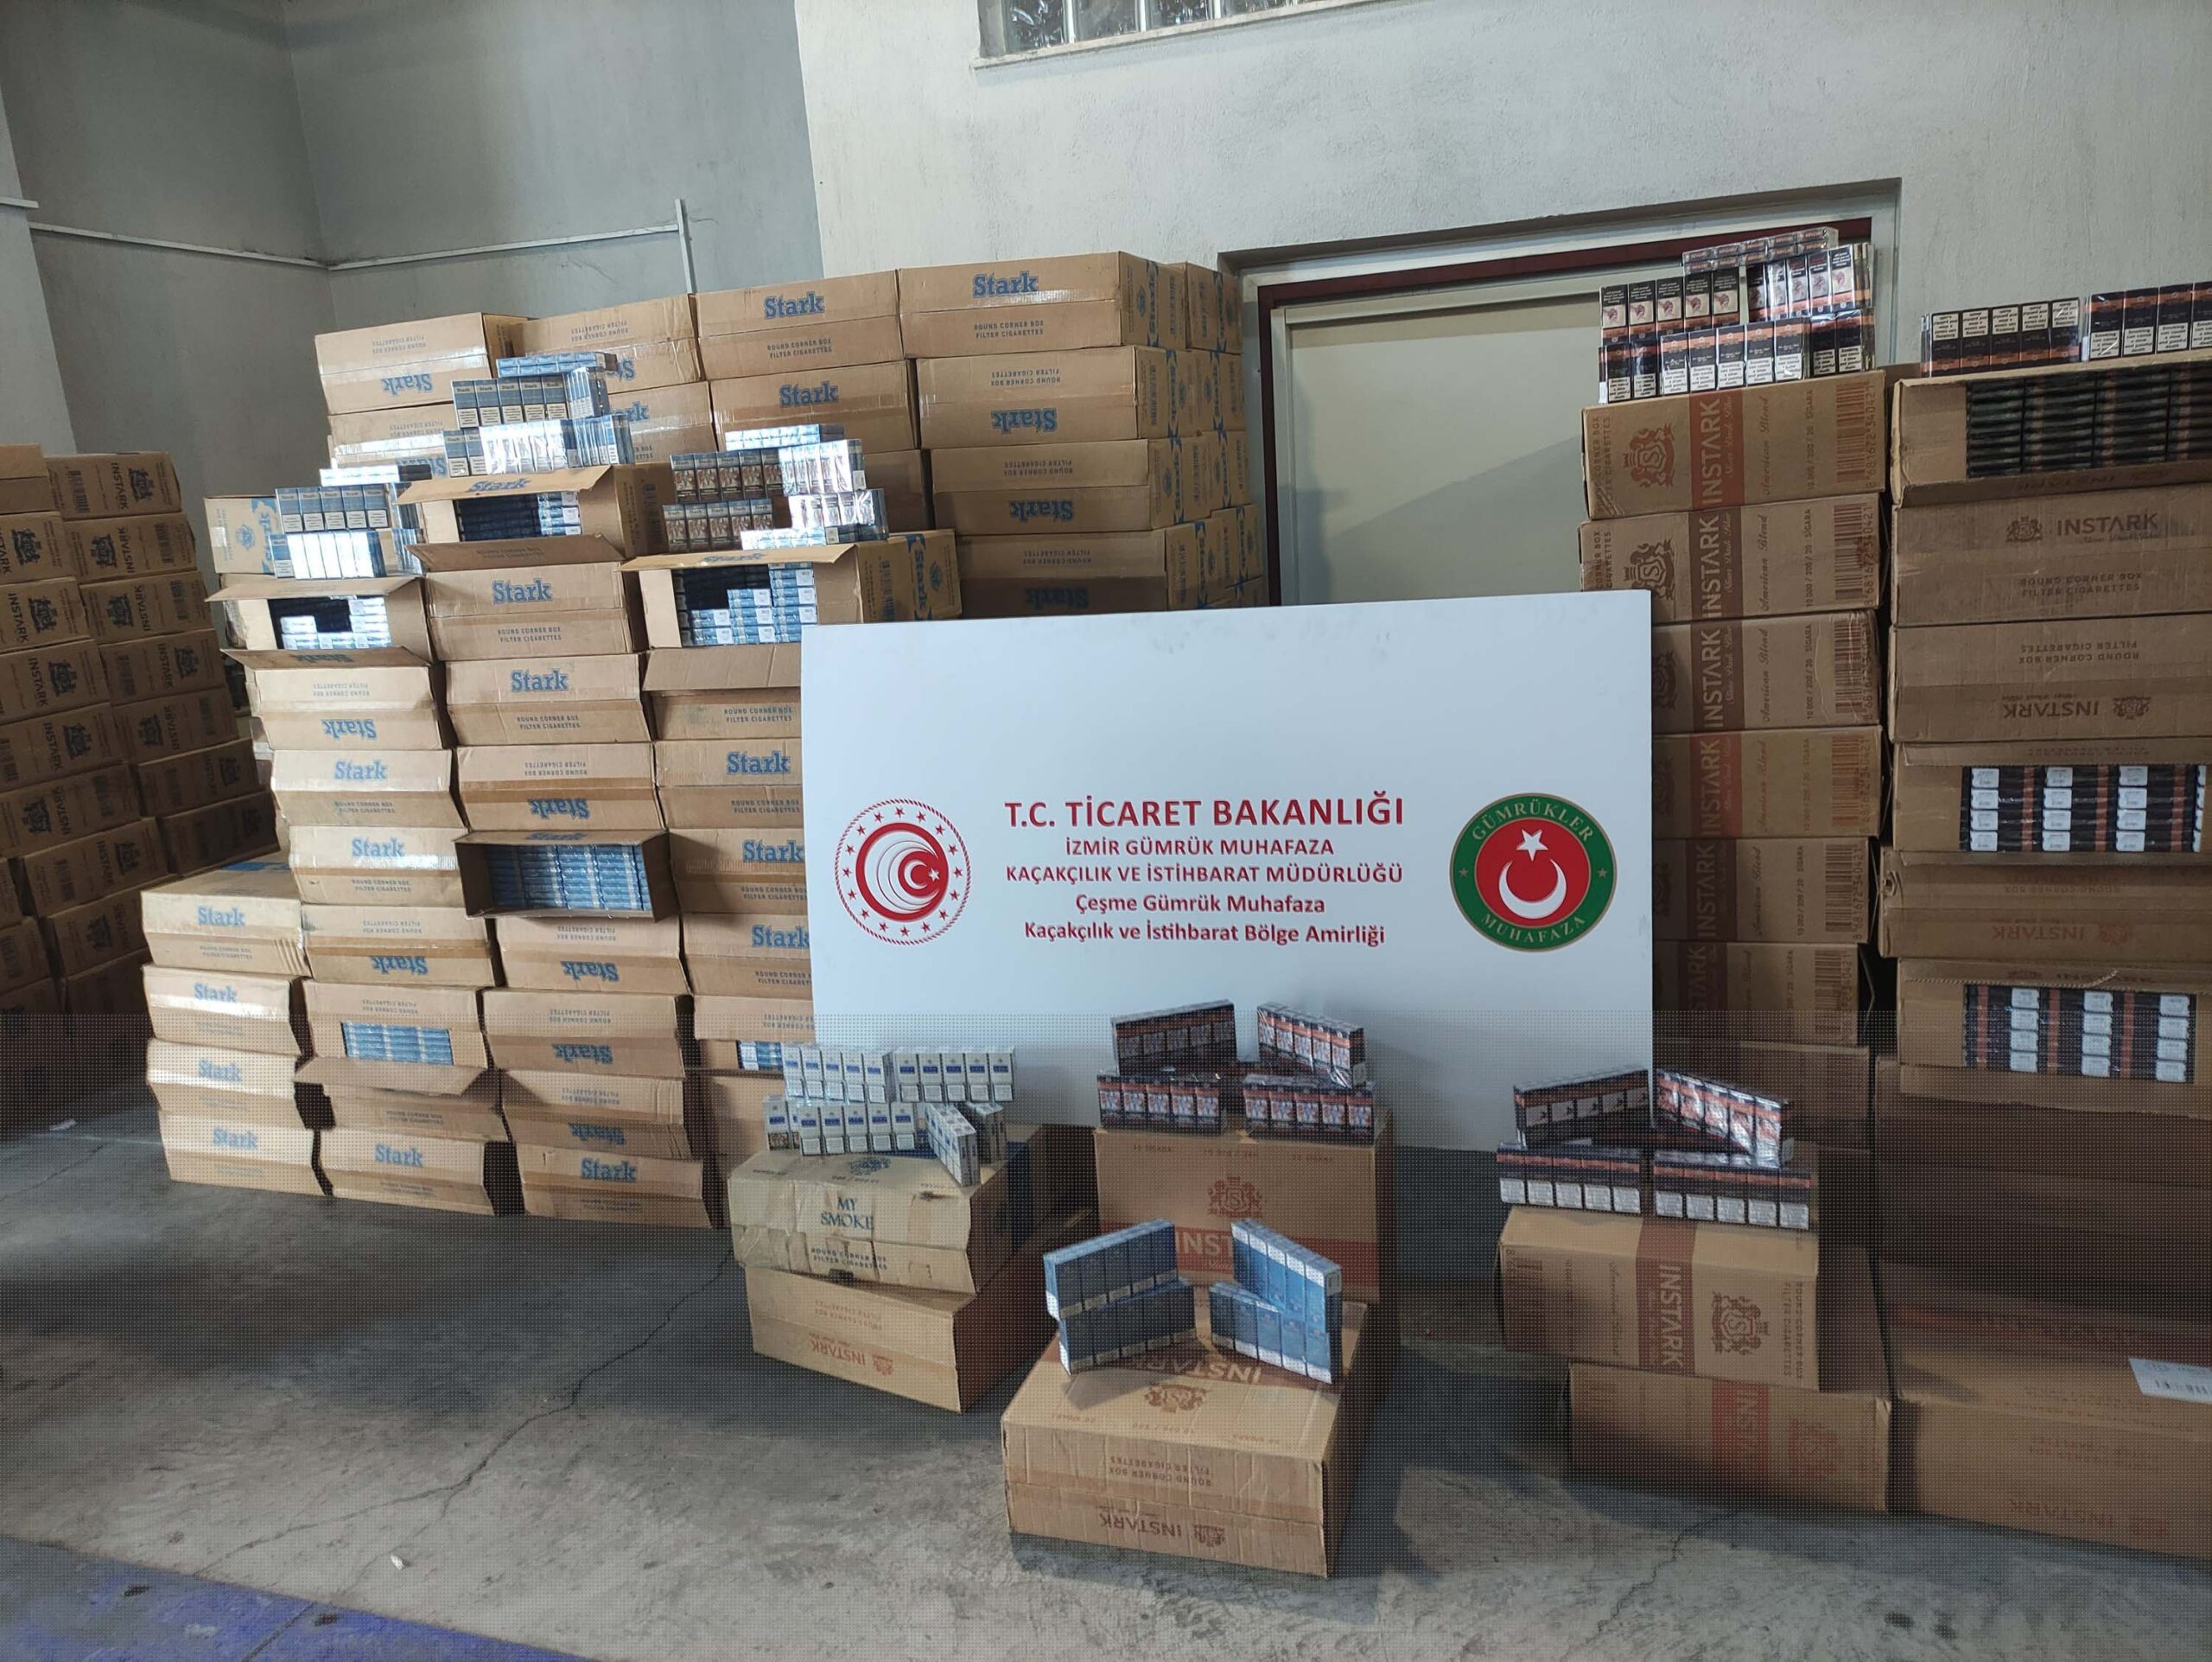 İtalya’dan İzmir’e gelen bir TIR’da yapılan operasyonda, 1 milyon paket kaçak sigara ele geçirildi.